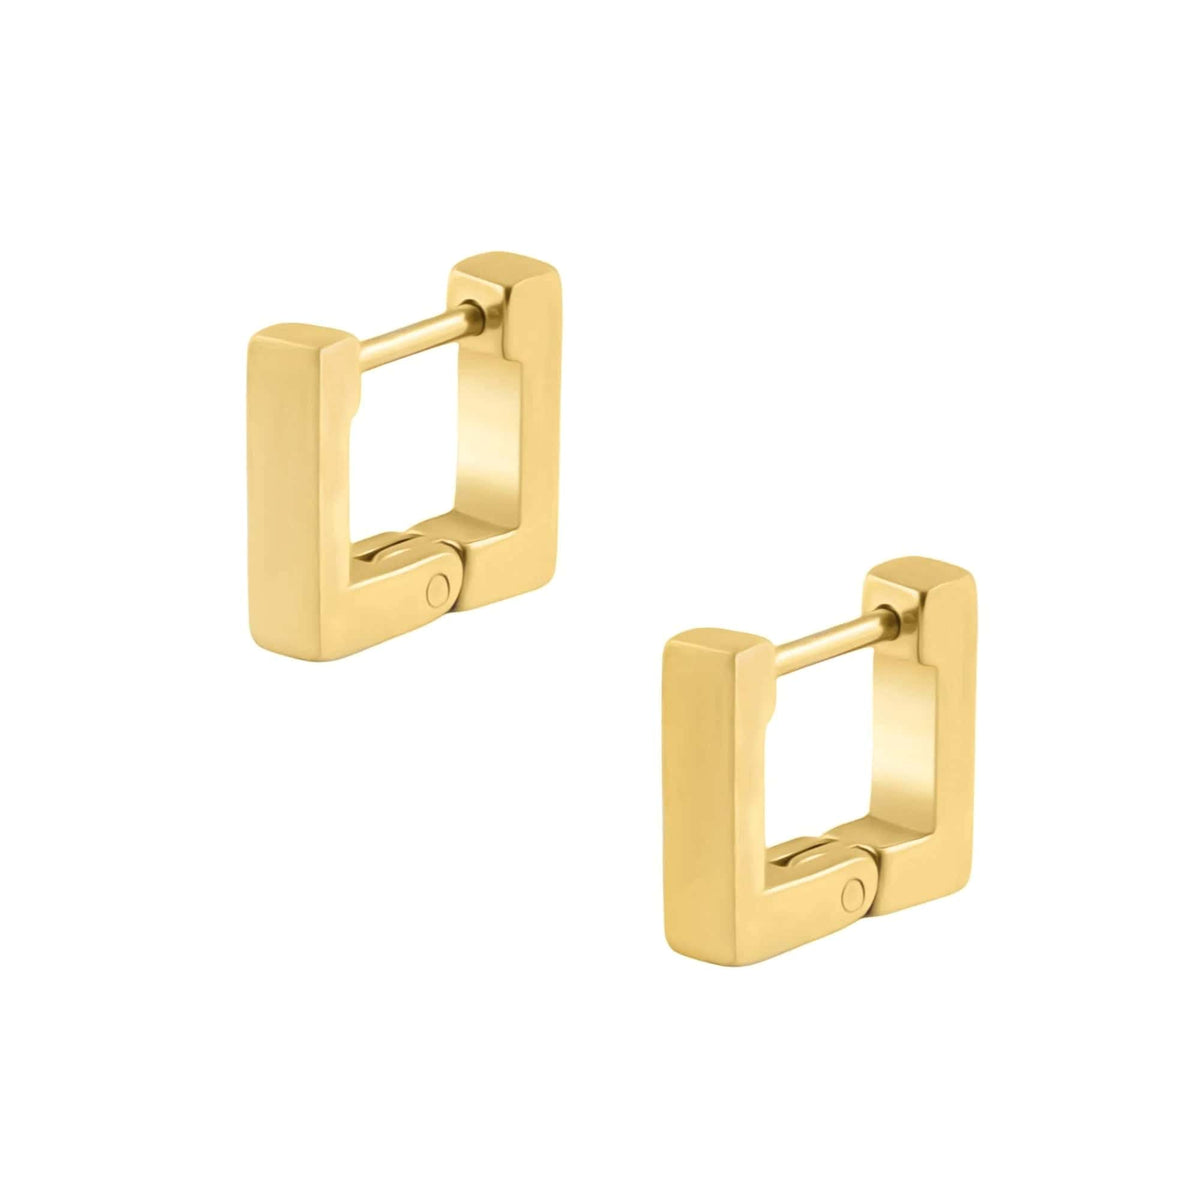 BohoMoon Stainless Steel Cubic Hoop Earrings Gold